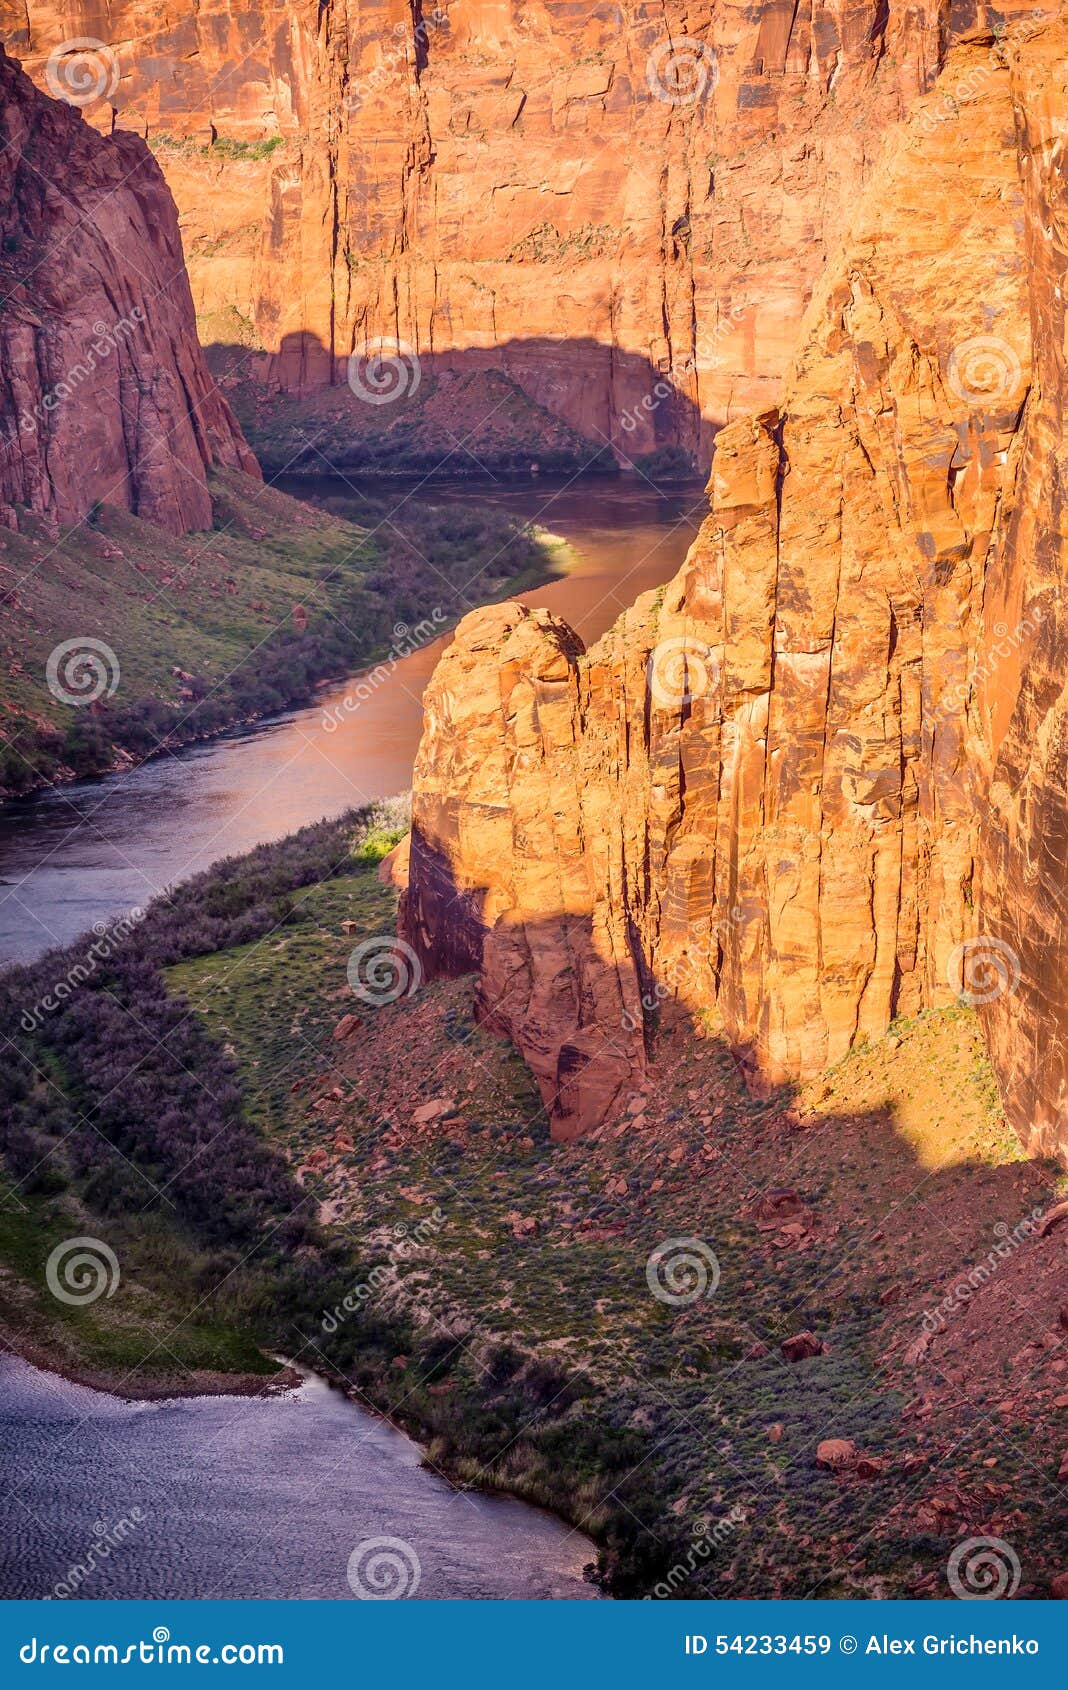 colorado viver flowing through grand canyon